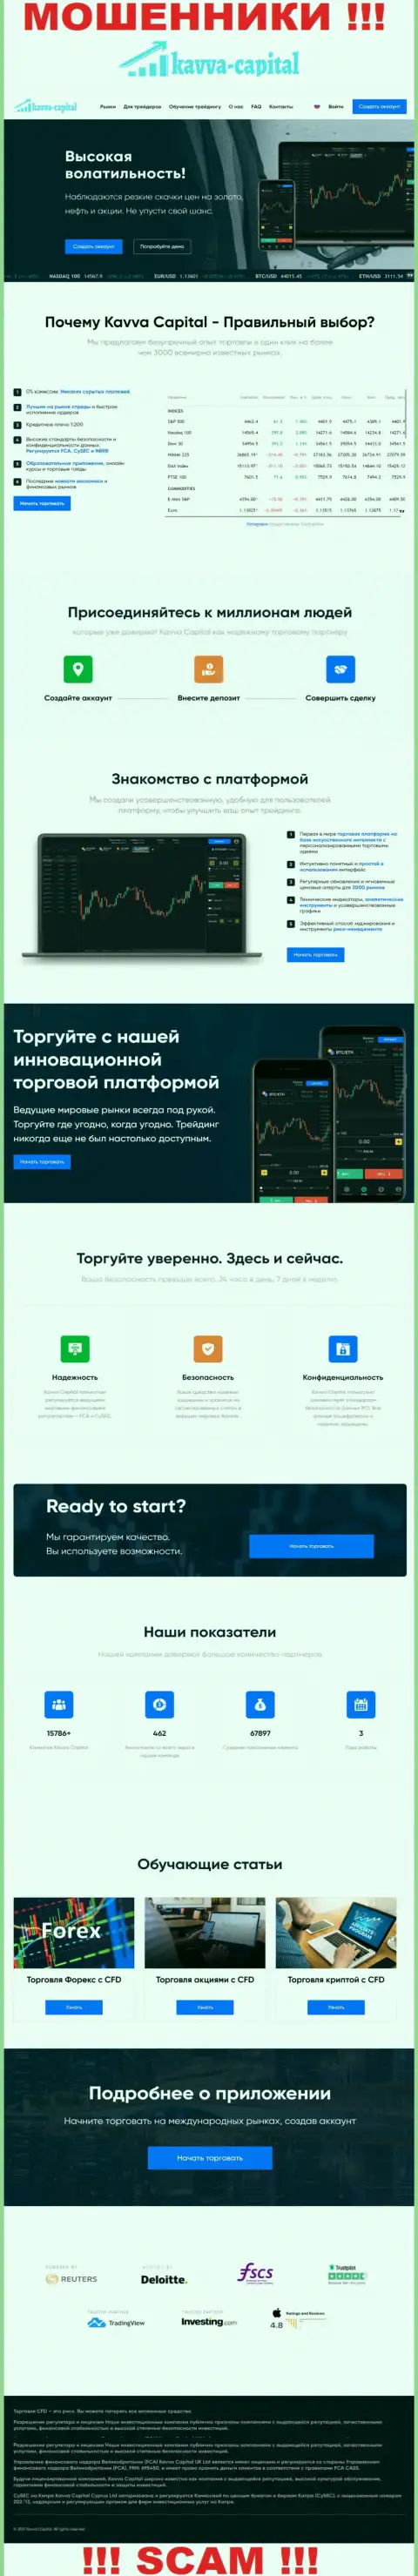 Официальный сайт мошенников Kavva Capital, забитый инфой для лохов